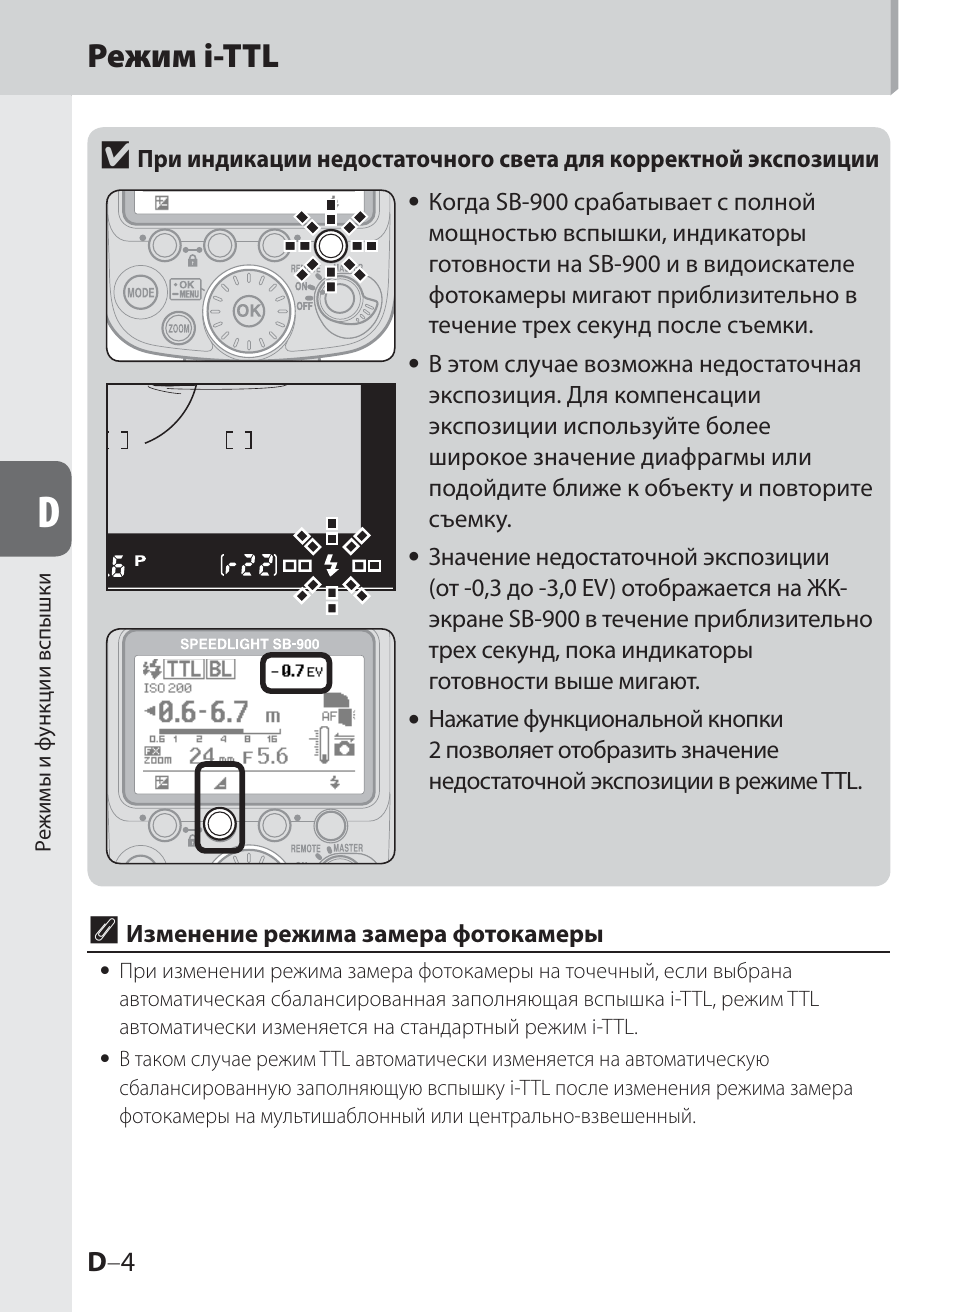 Режим i-ttl v | Инструкция по эксплуатации Nikon SB-900 | Страница 54 / 144